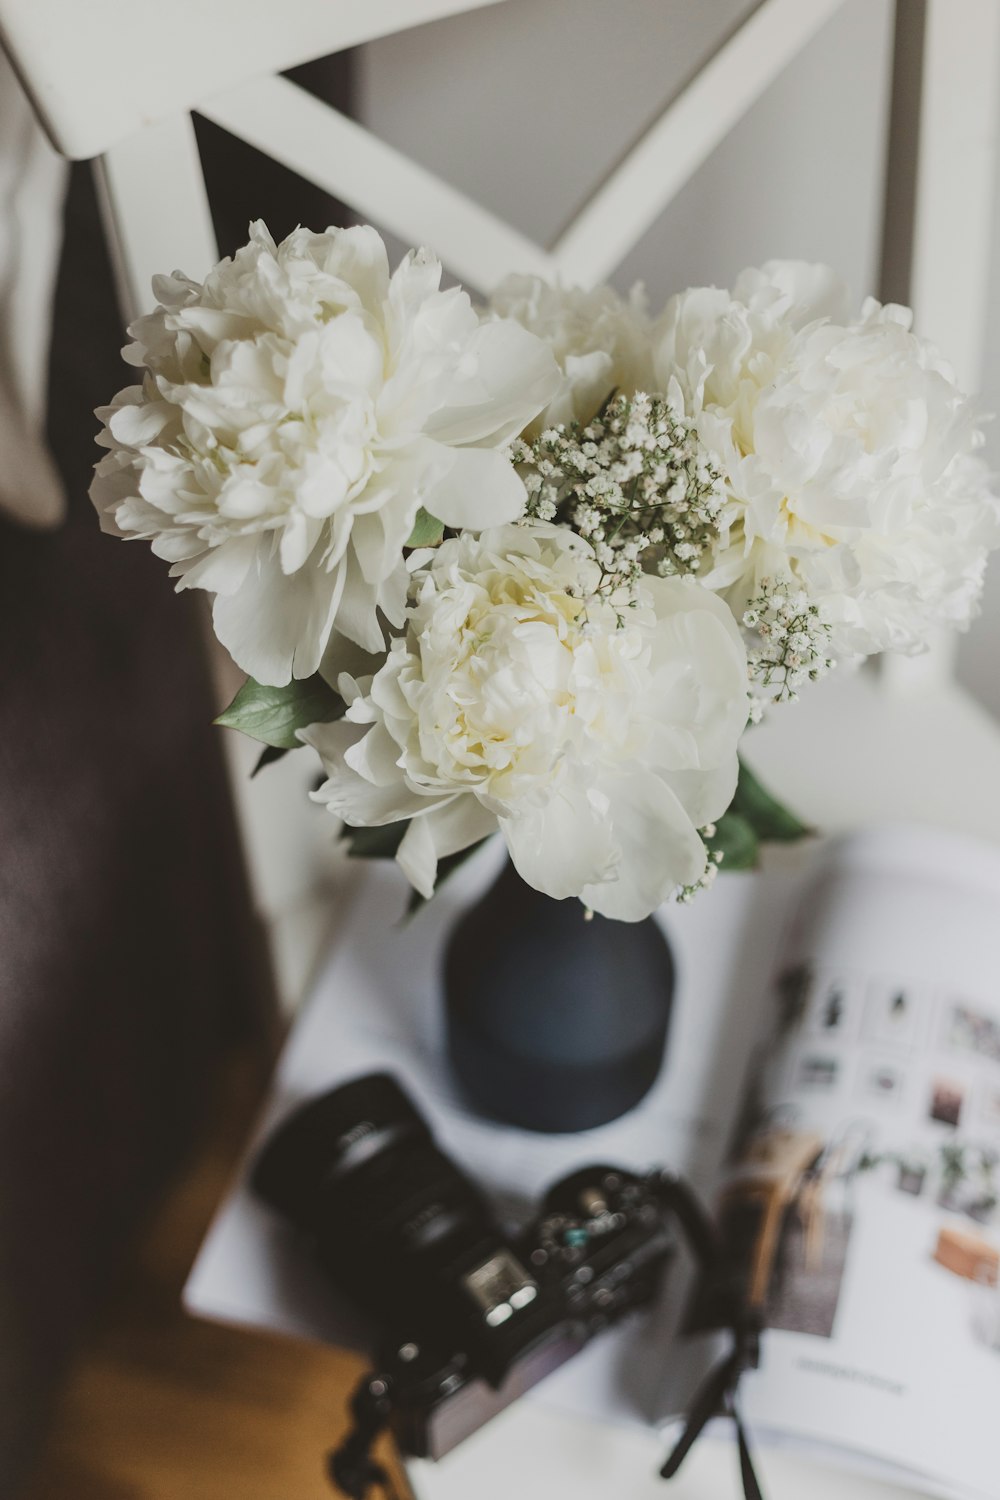 테이블 위에 검은 꽃병에 흰 모란 꽃